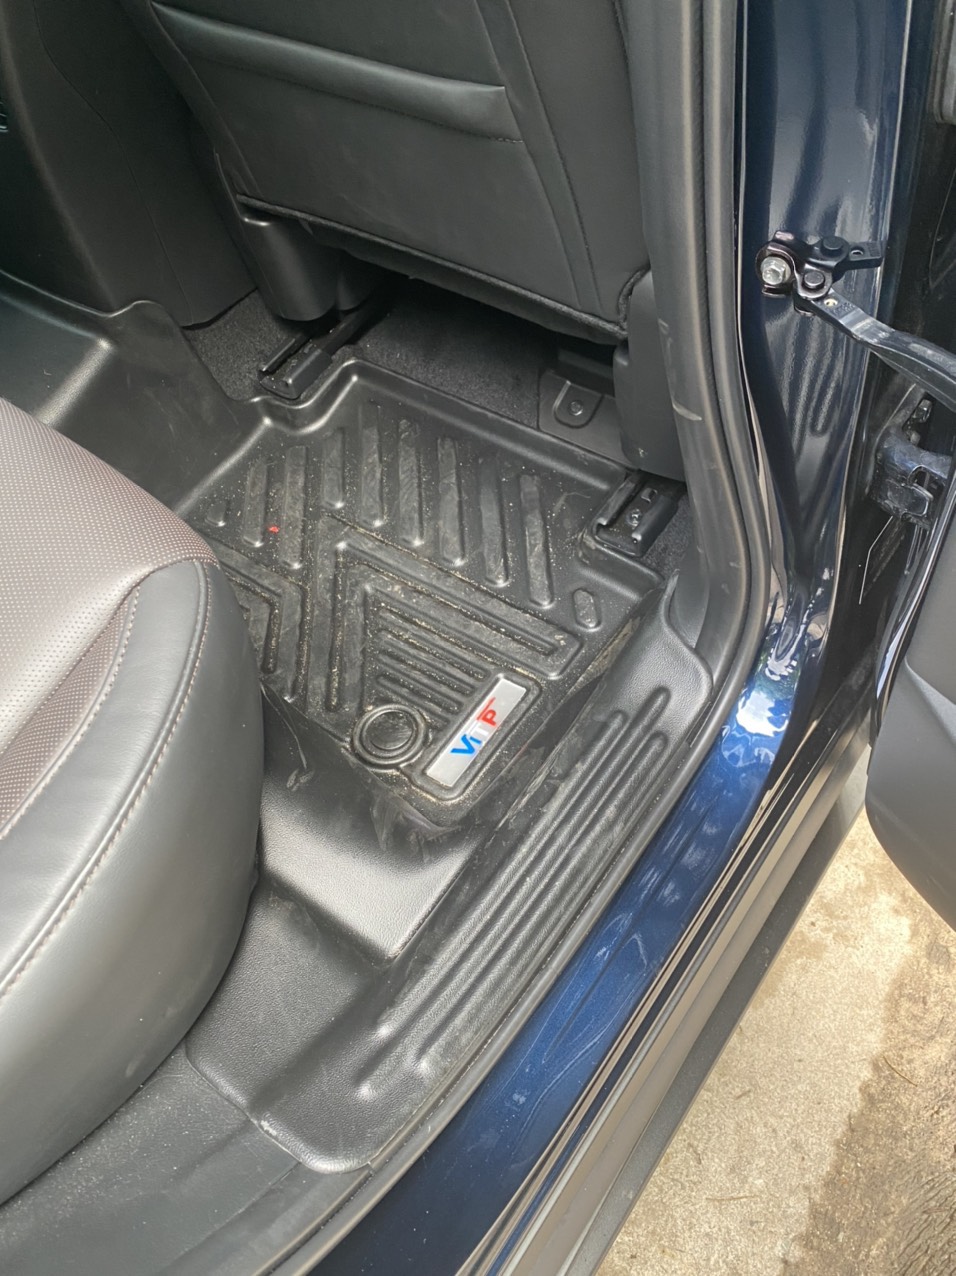 Thảm sàn ViTP Nhựa 360 Full Tràn Viền Bậc Cửa Xe Mazda CX30